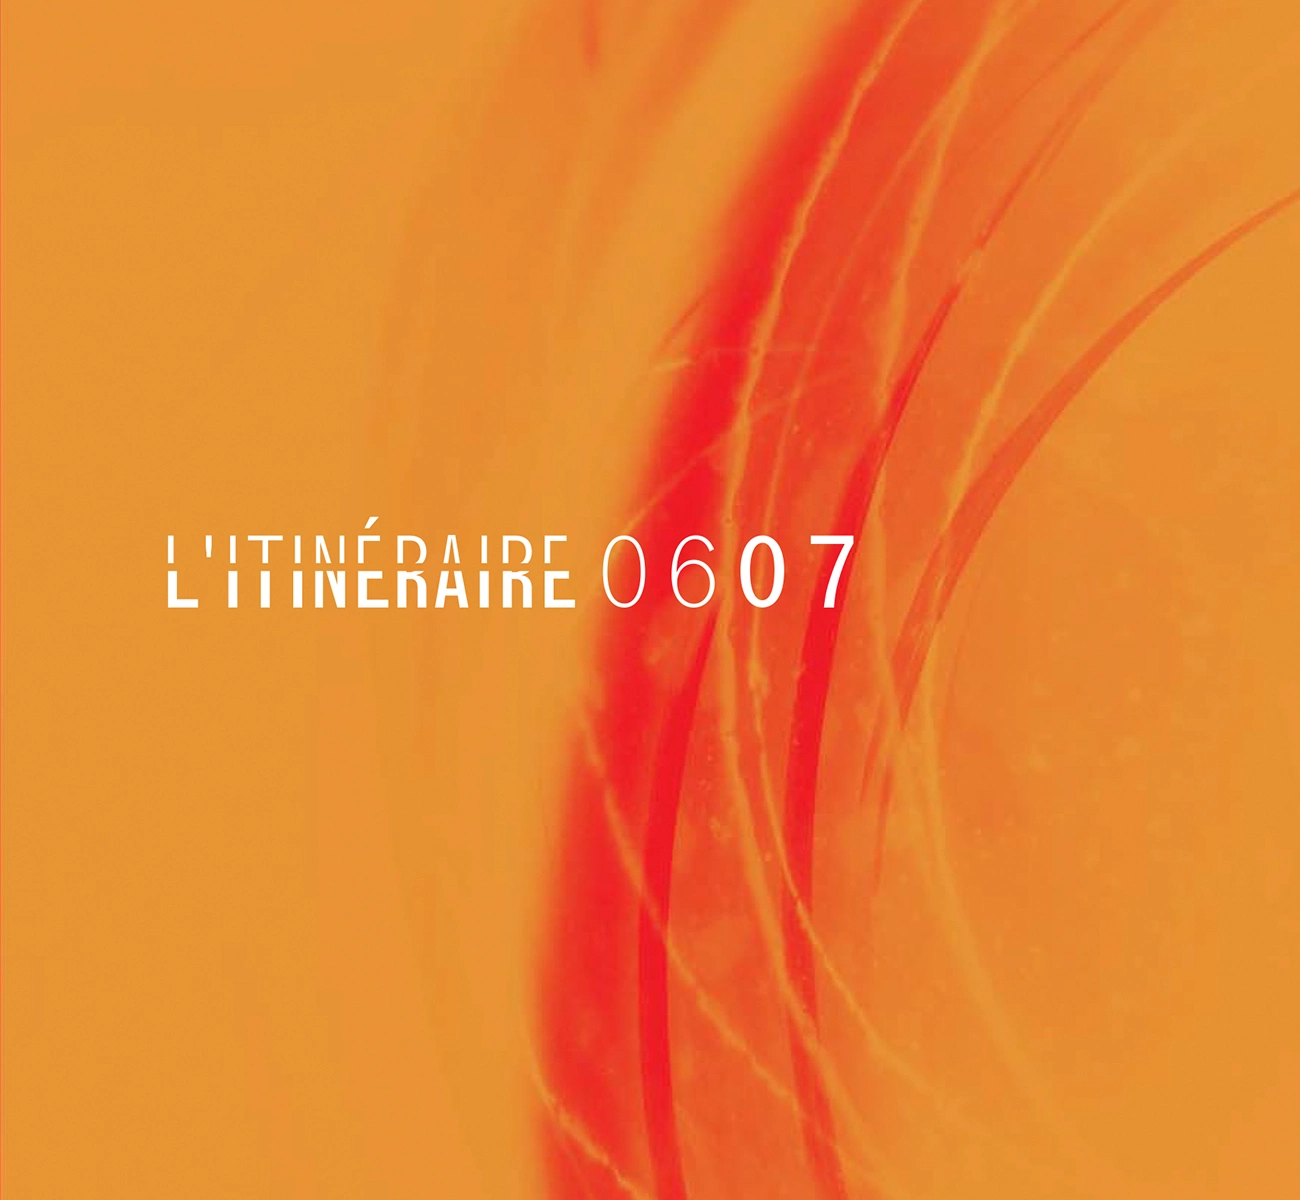 Image de couverture du projet L'Itinéraire 2006 2007 de l'ensemble musical L'Itinéraire de la page portfolio